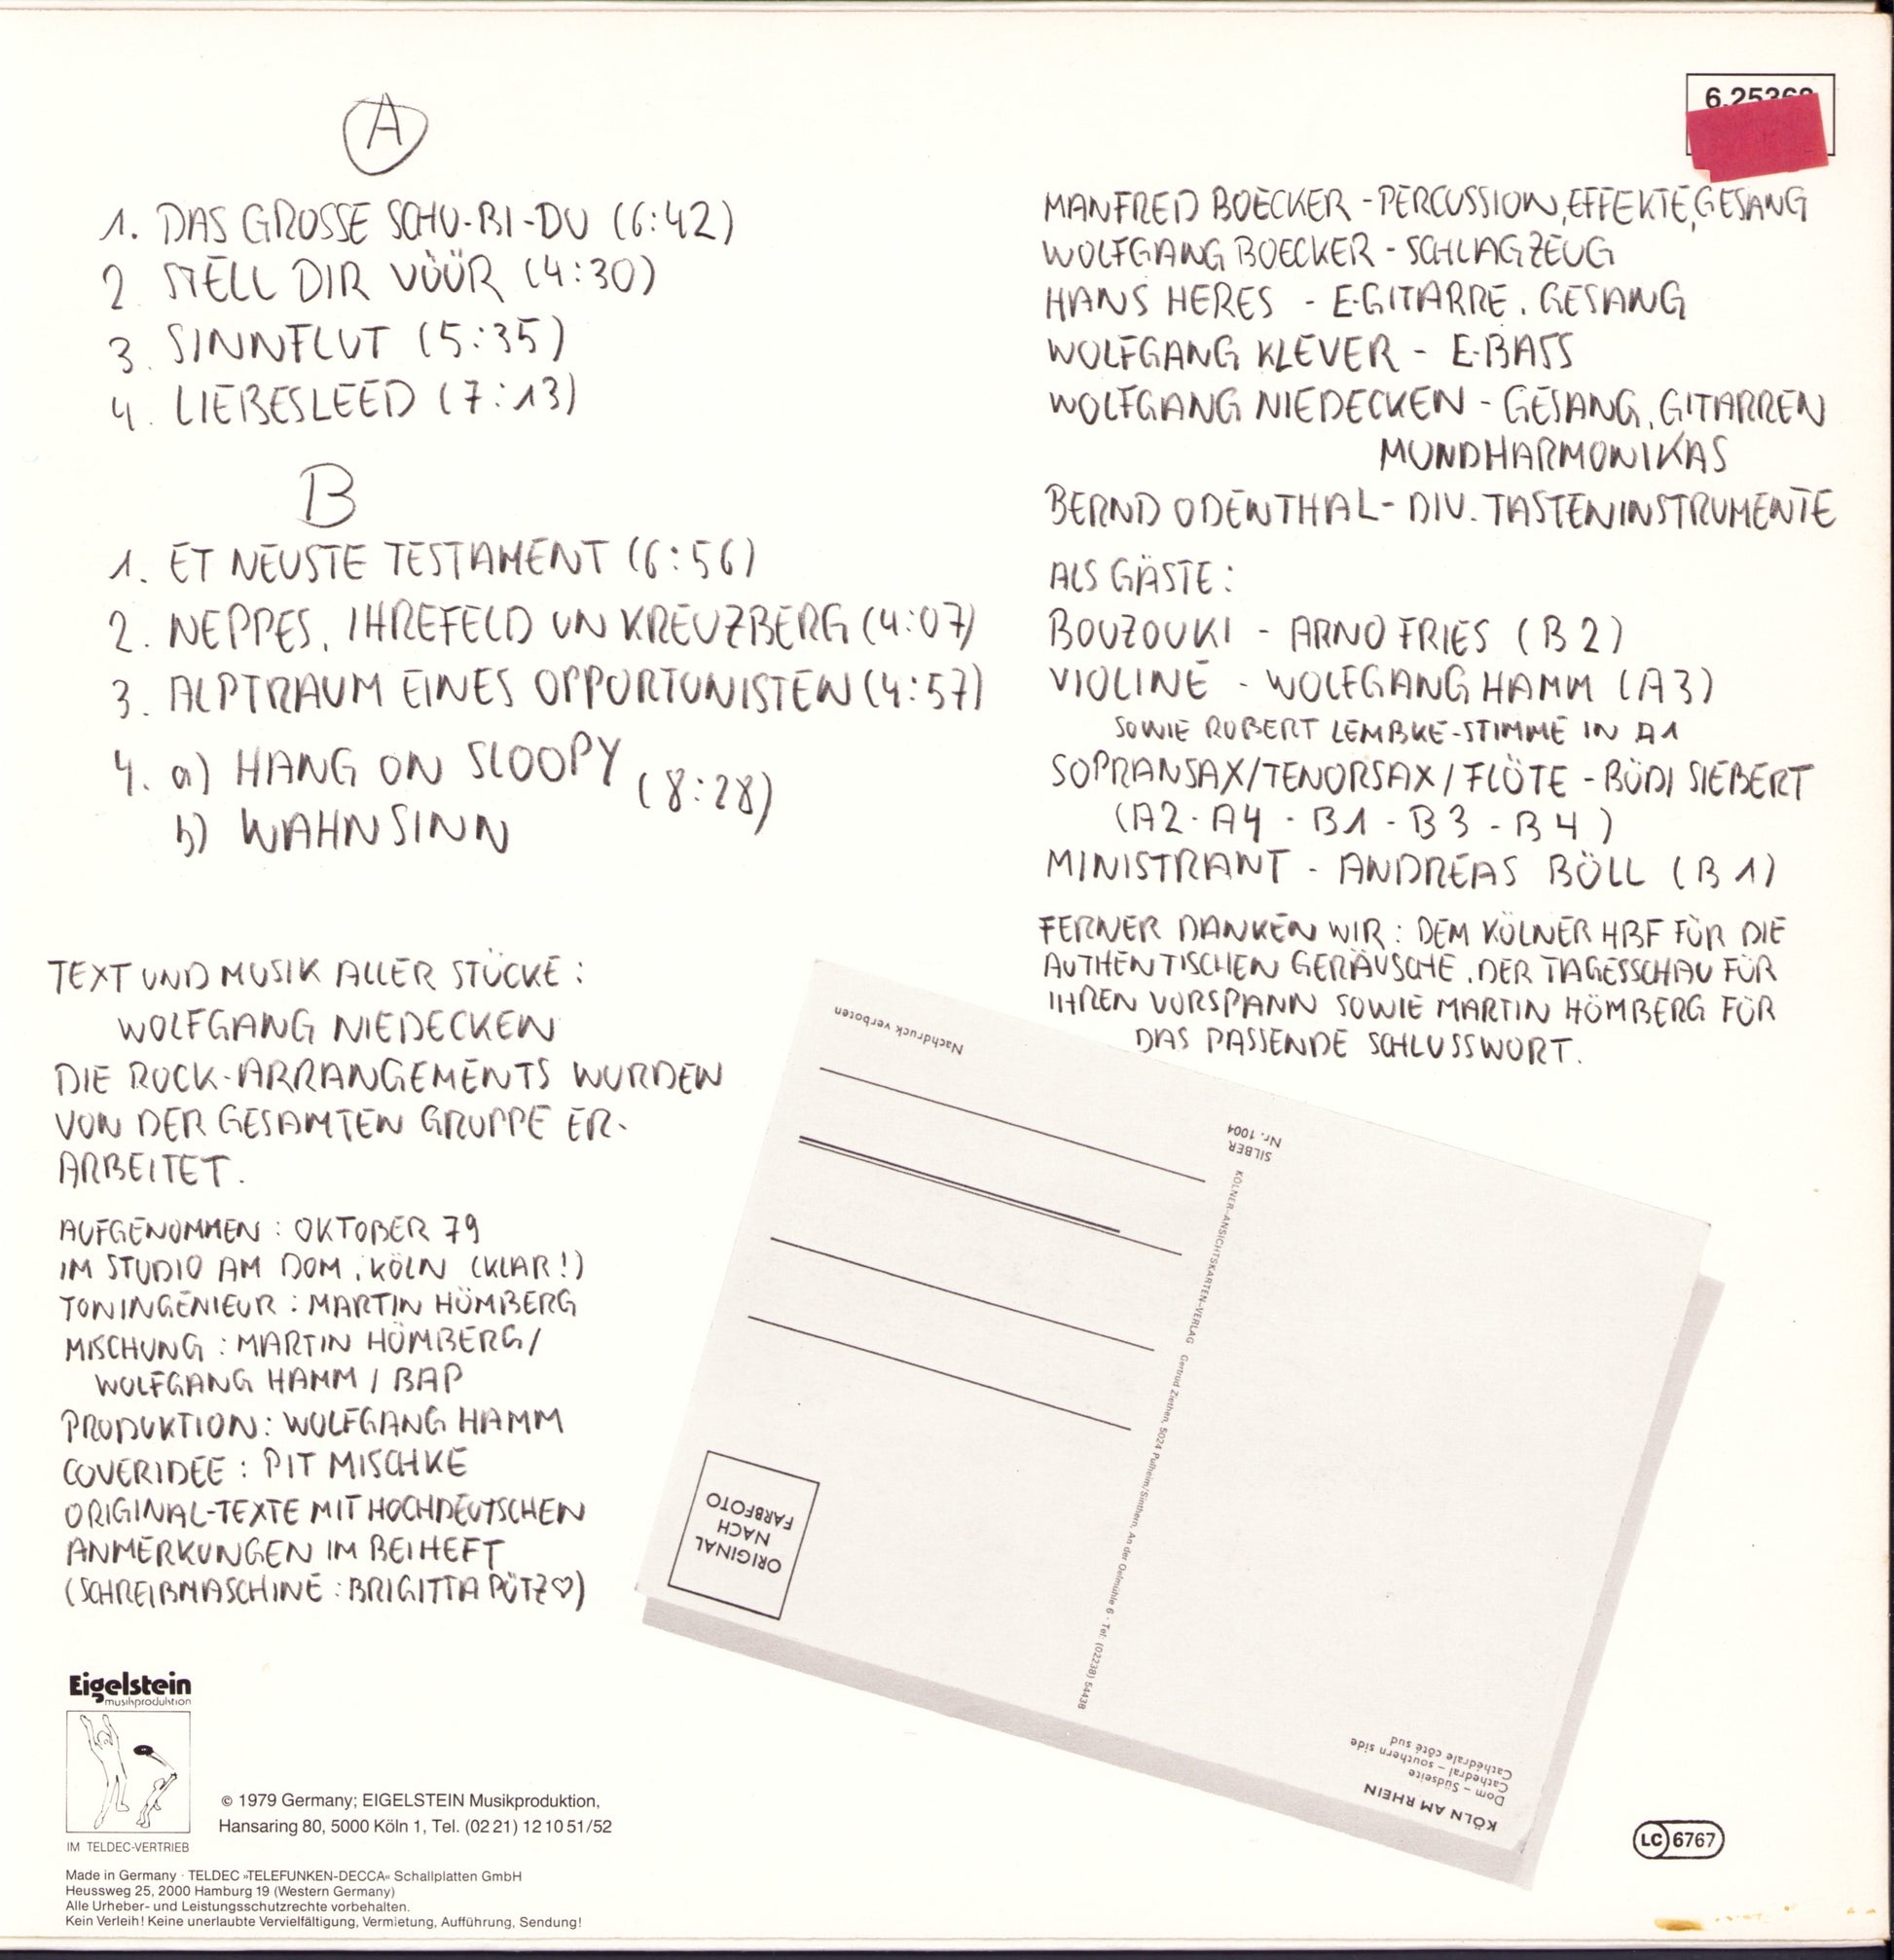 Wolfgang Niedecken's BAP ‎- Rockt Andere Kölsche Leeder Vinyl LP